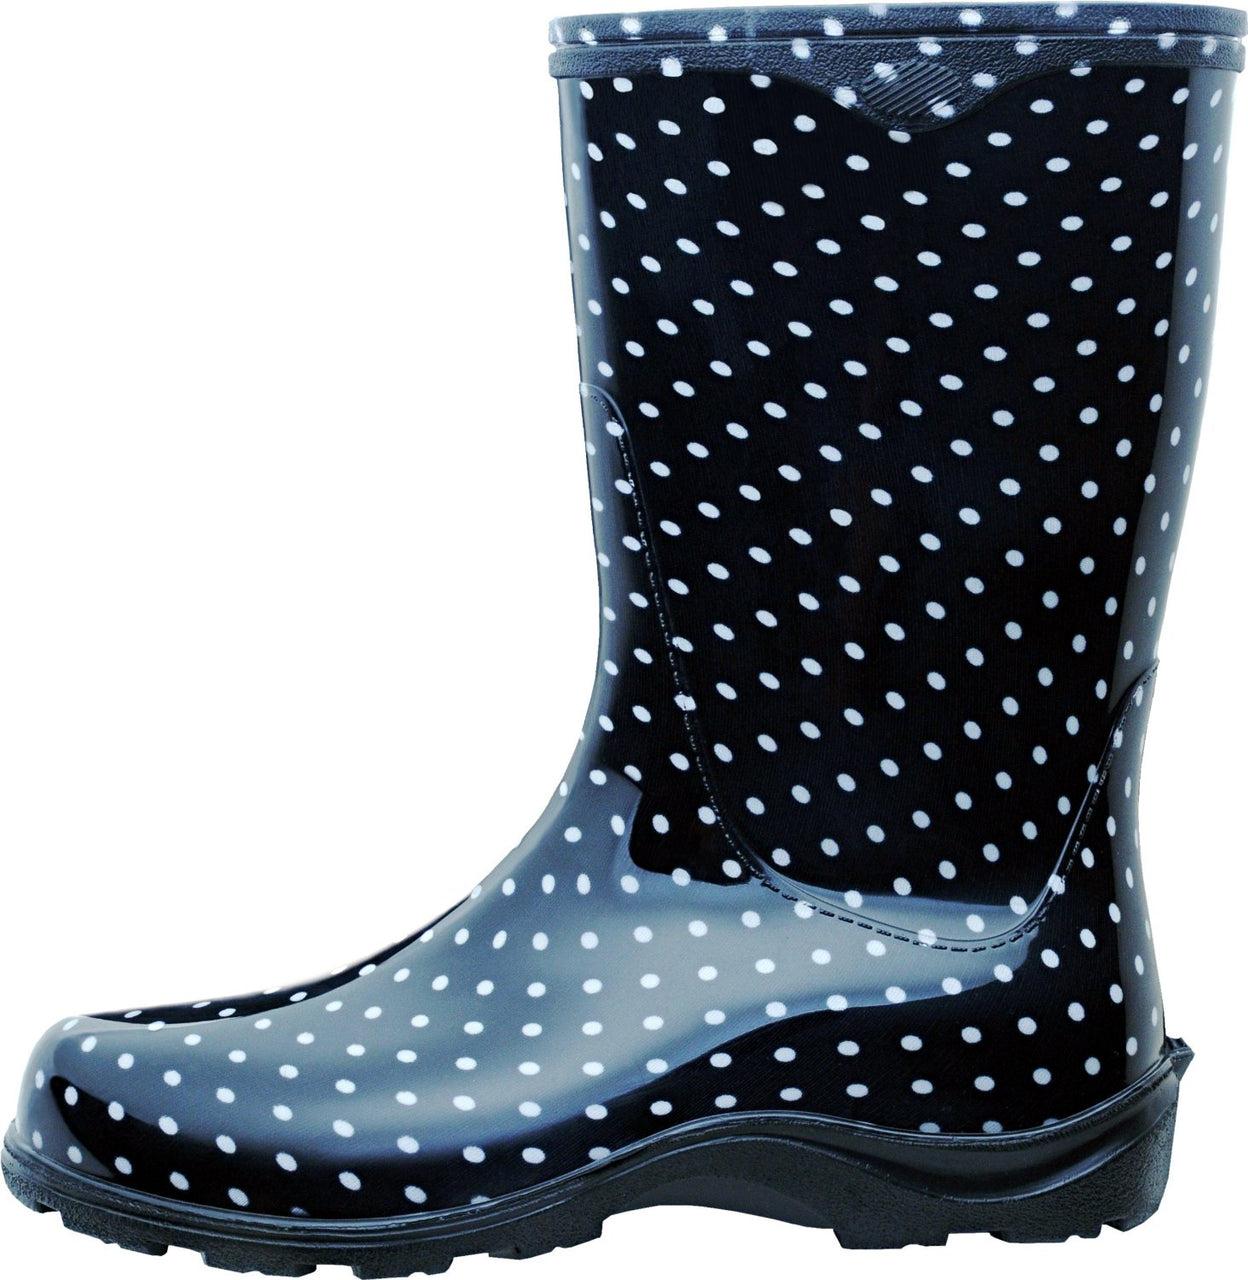 women's polka dot rain boots